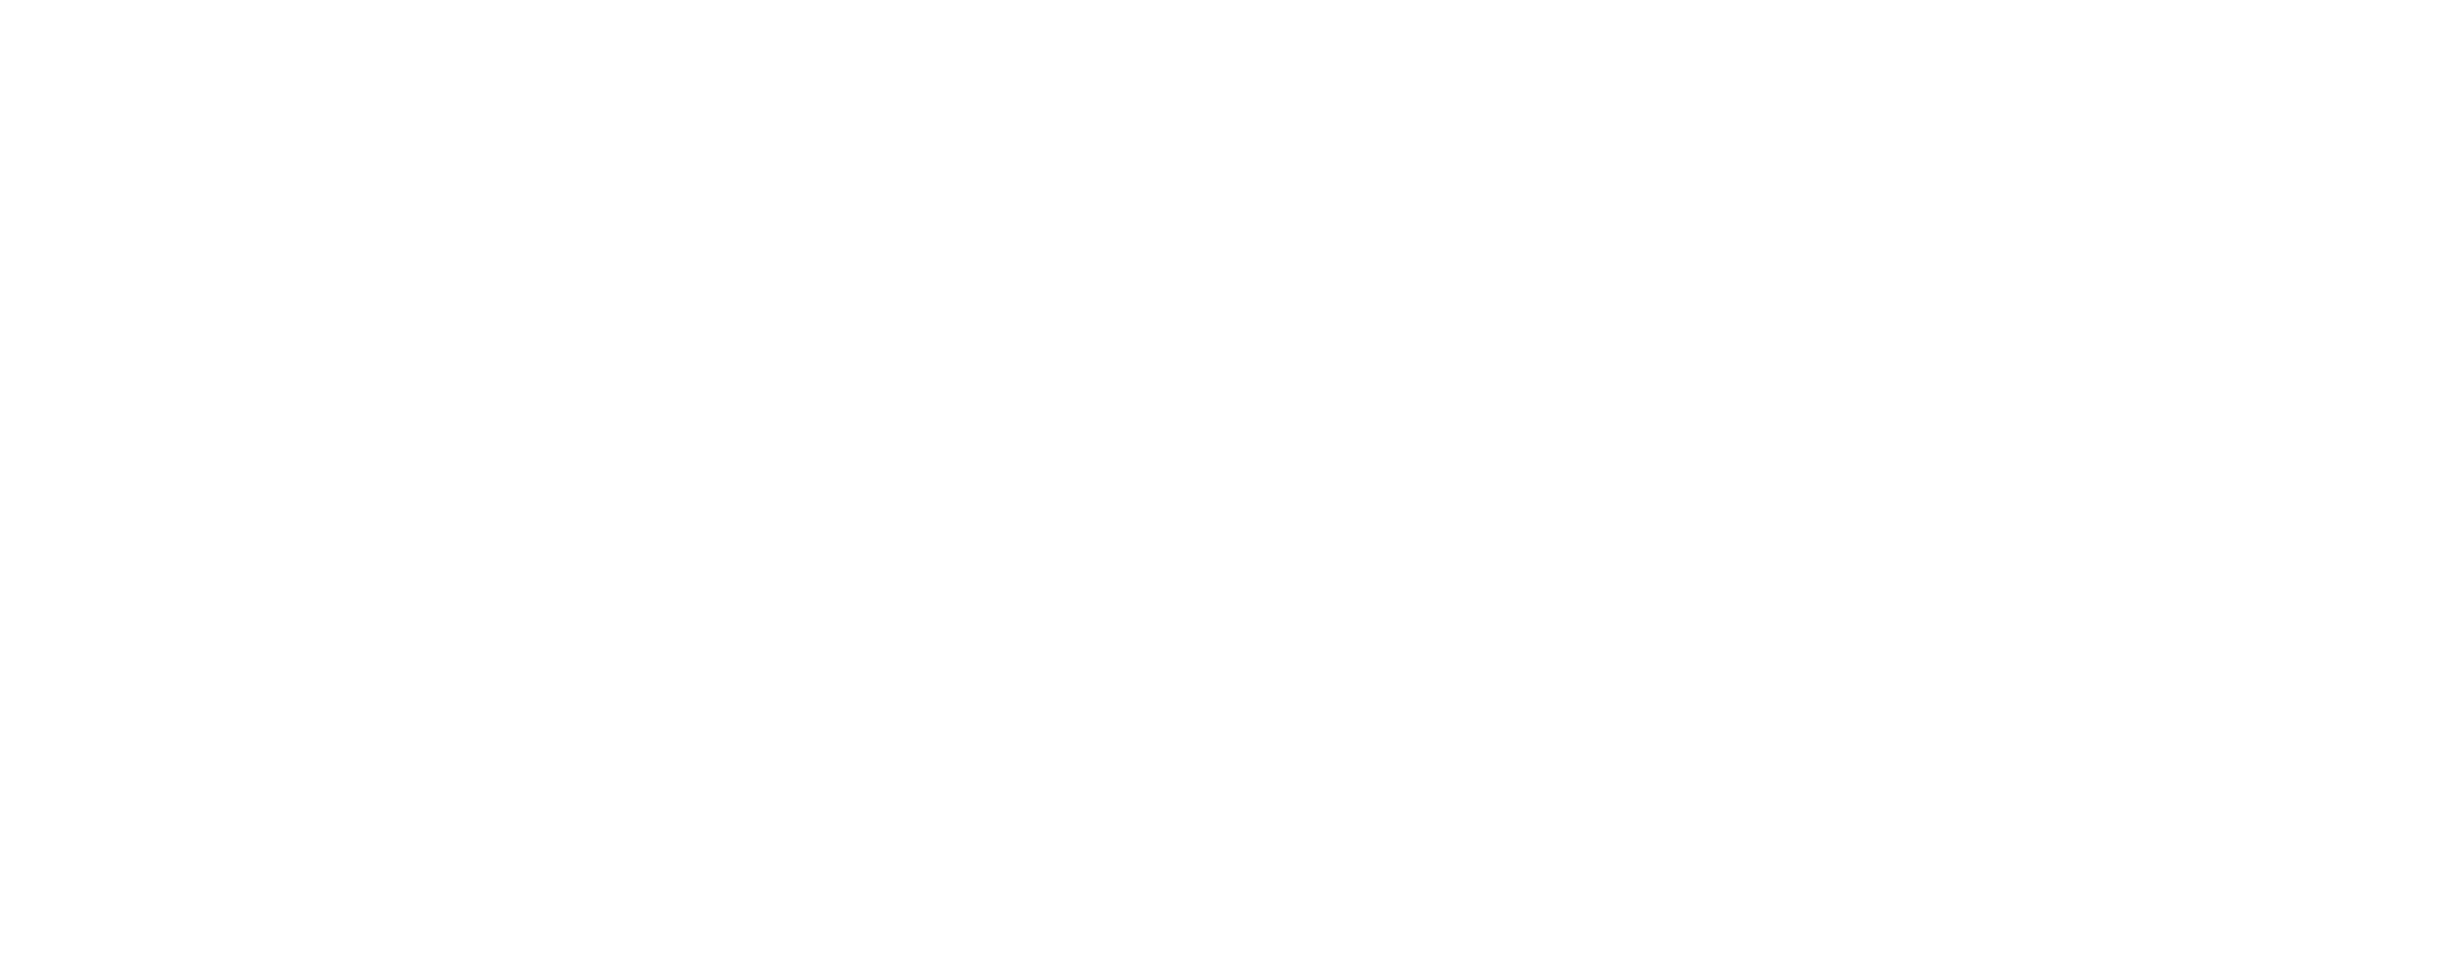 Habibi’s Hookah Lounge